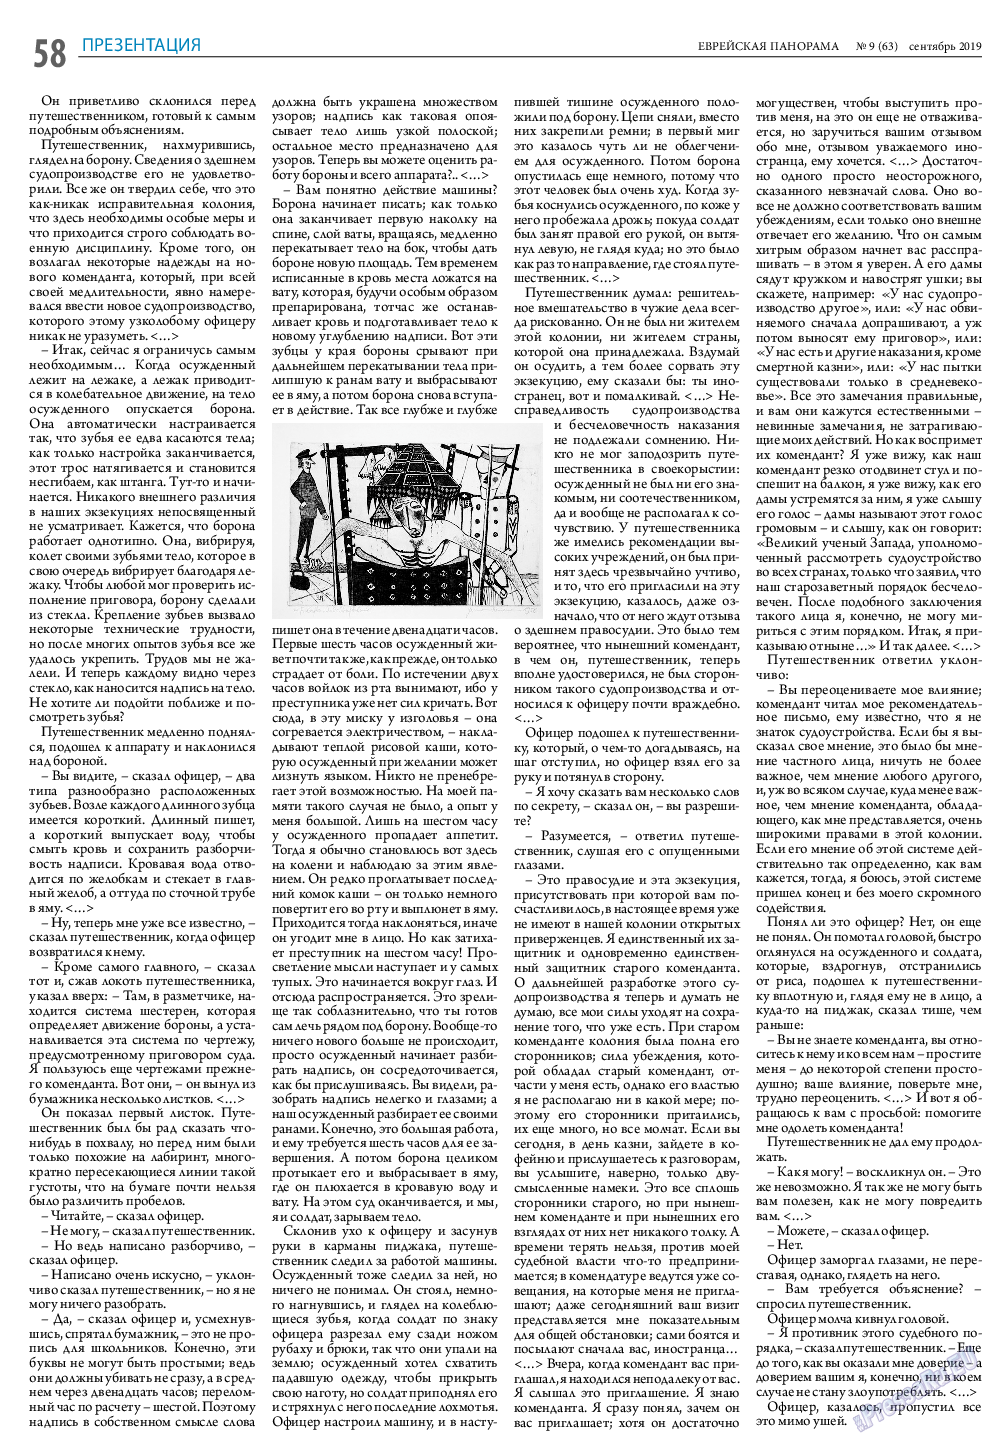 Еврейская панорама (газета). 2019 год, номер 9, стр. 58